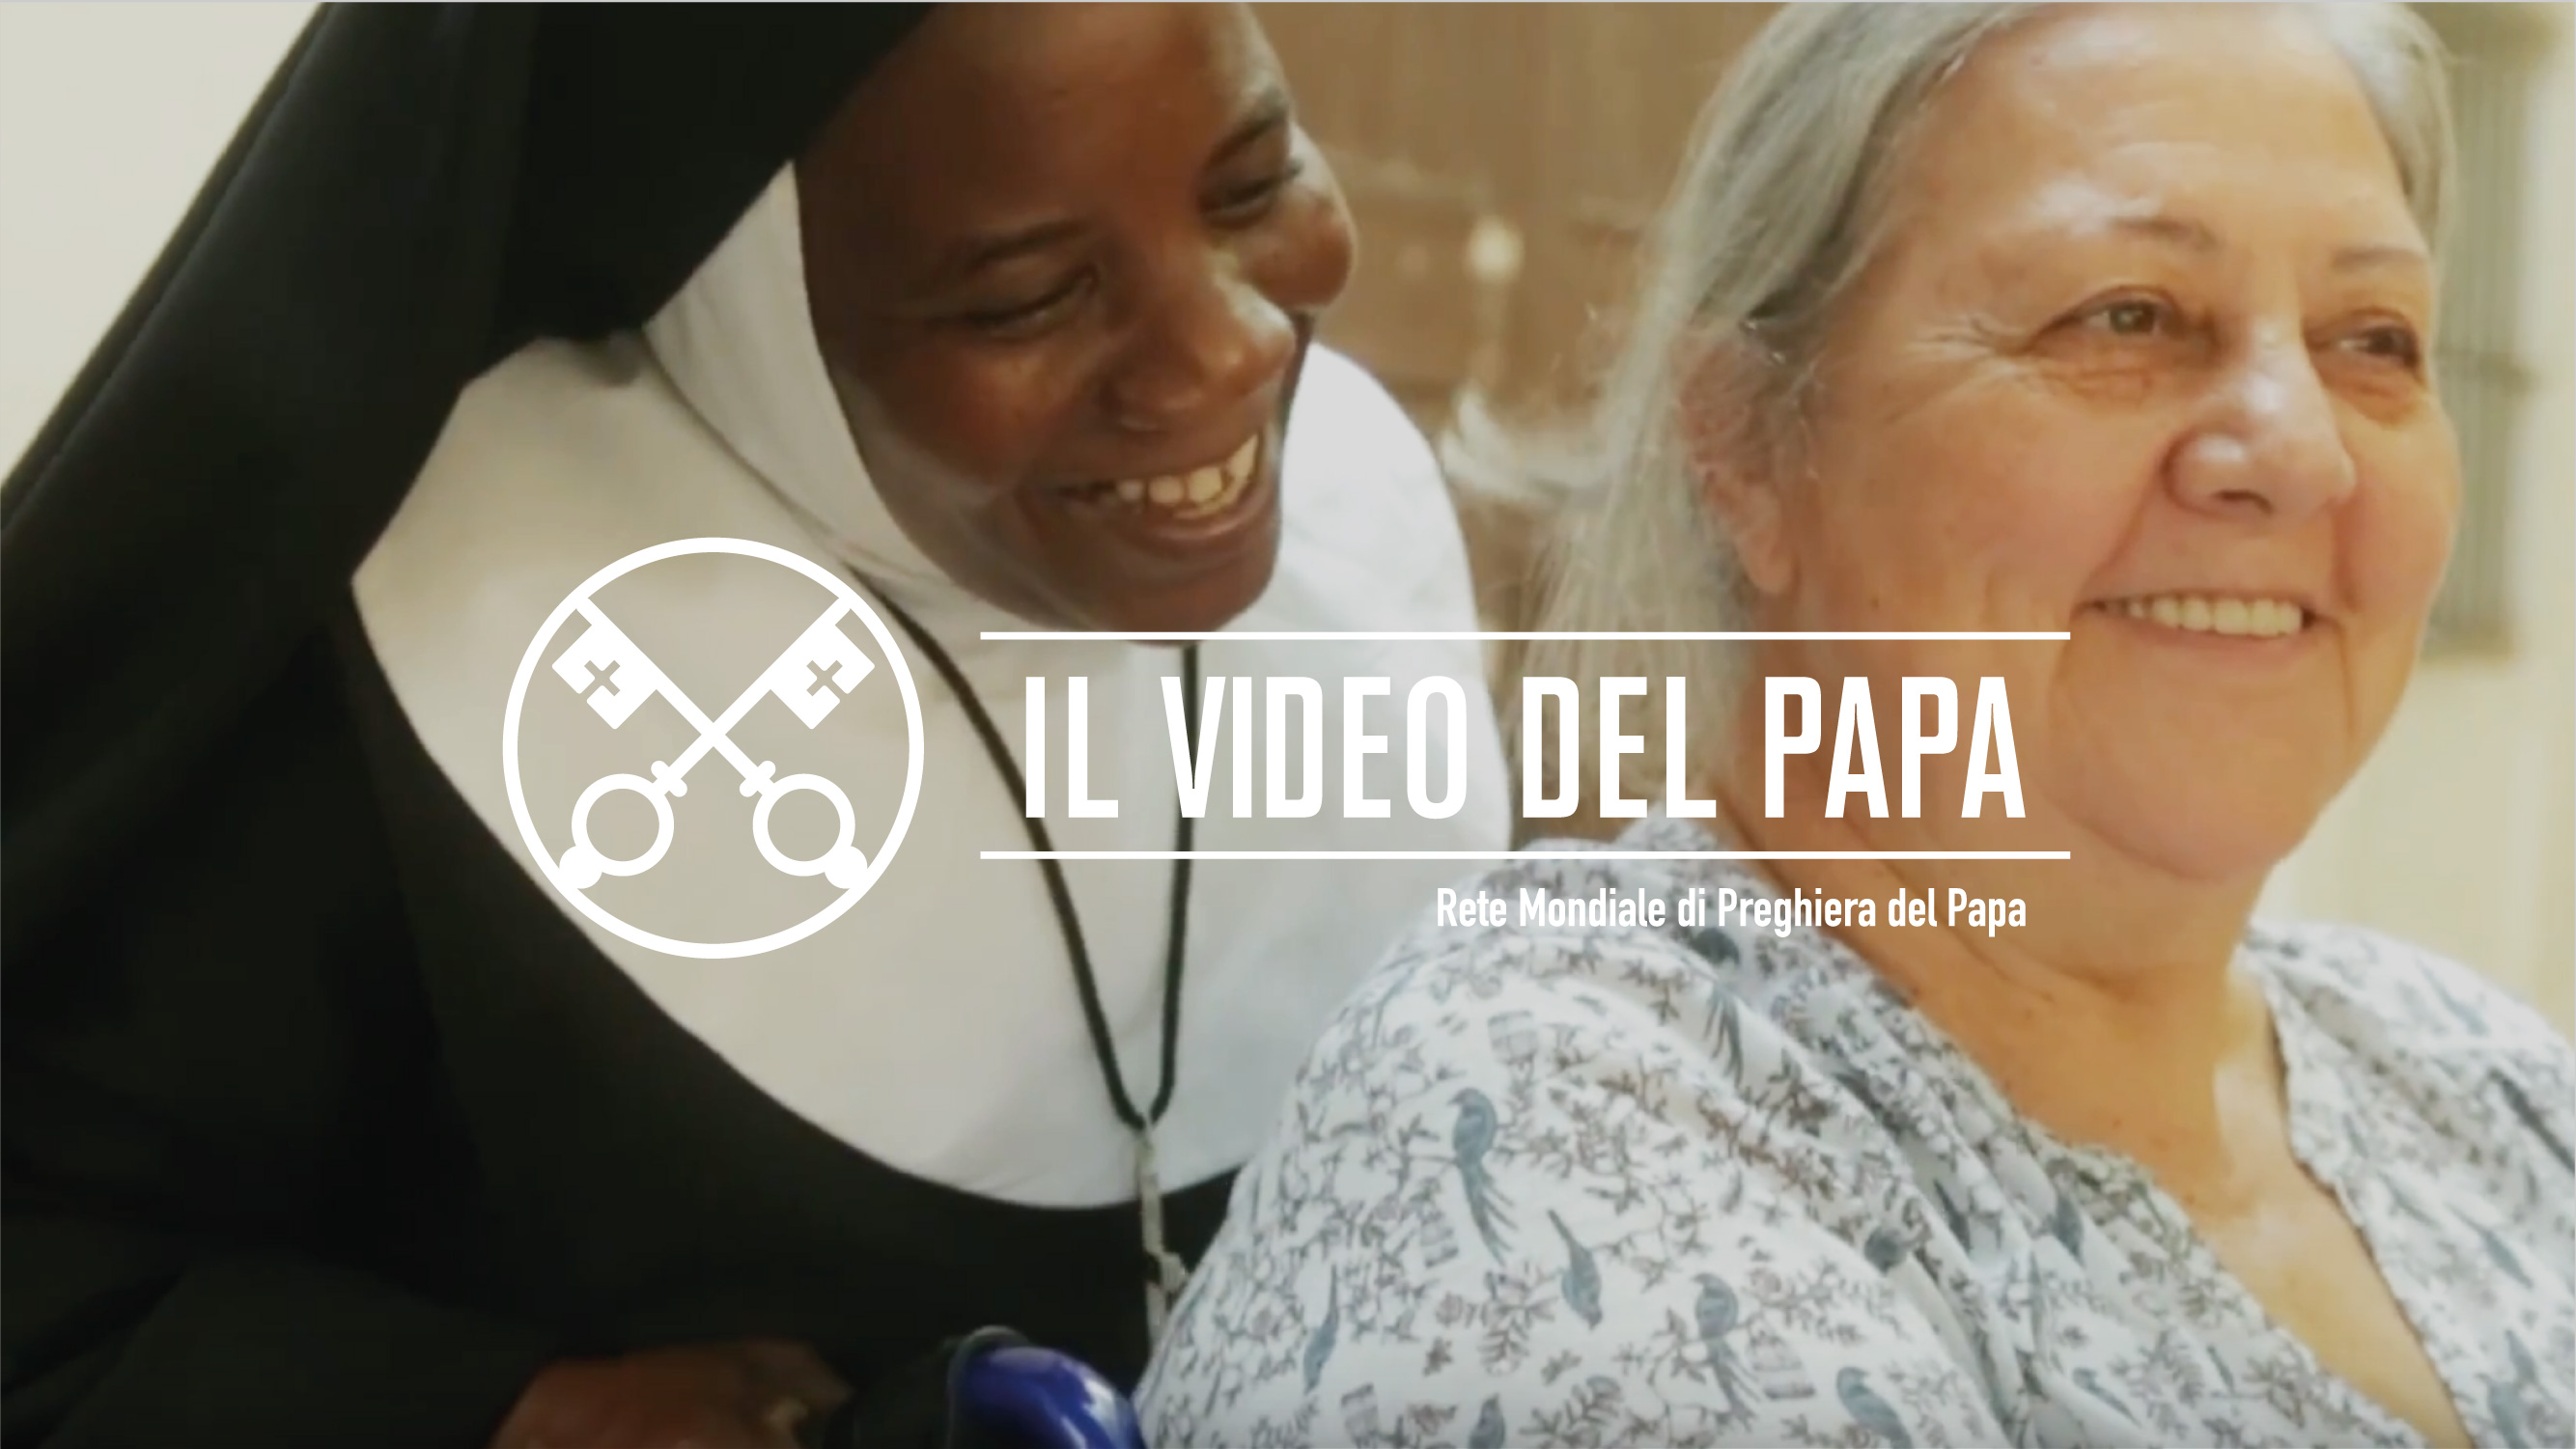 Francesco ne Il Video del Papa: “Non lasciamoci rubare l’entusiasmo missionario!”